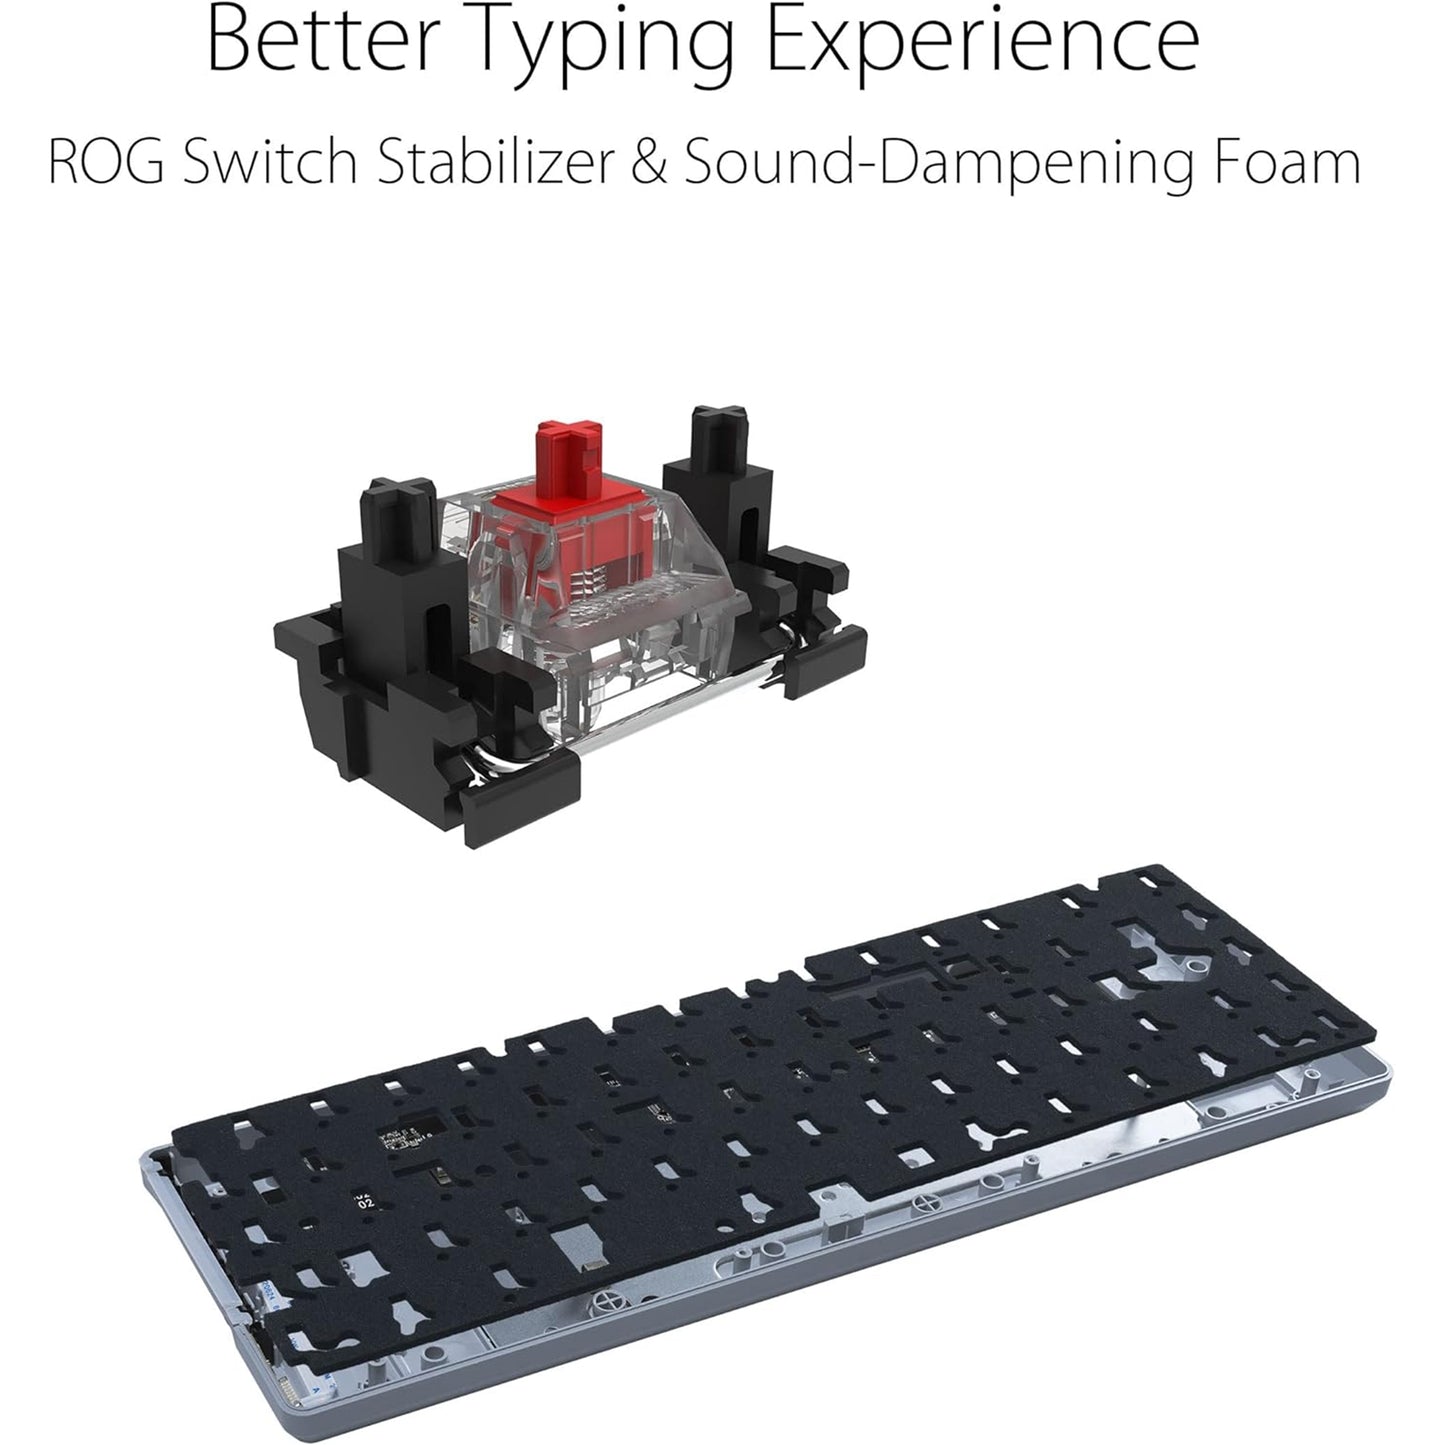 لوحة مفاتيح ميكانيكية مدمجة للألعاب ASUS ROG Falchion Ace 65% RGB، ومفاتيح ROG NX بنية ومثبتات مفاتيح، وإسفنج مثبط الصوت، وأغطية مفاتيح PBT، سلكية مع KVM، وثلاث زوايا، وغطاء أسود 